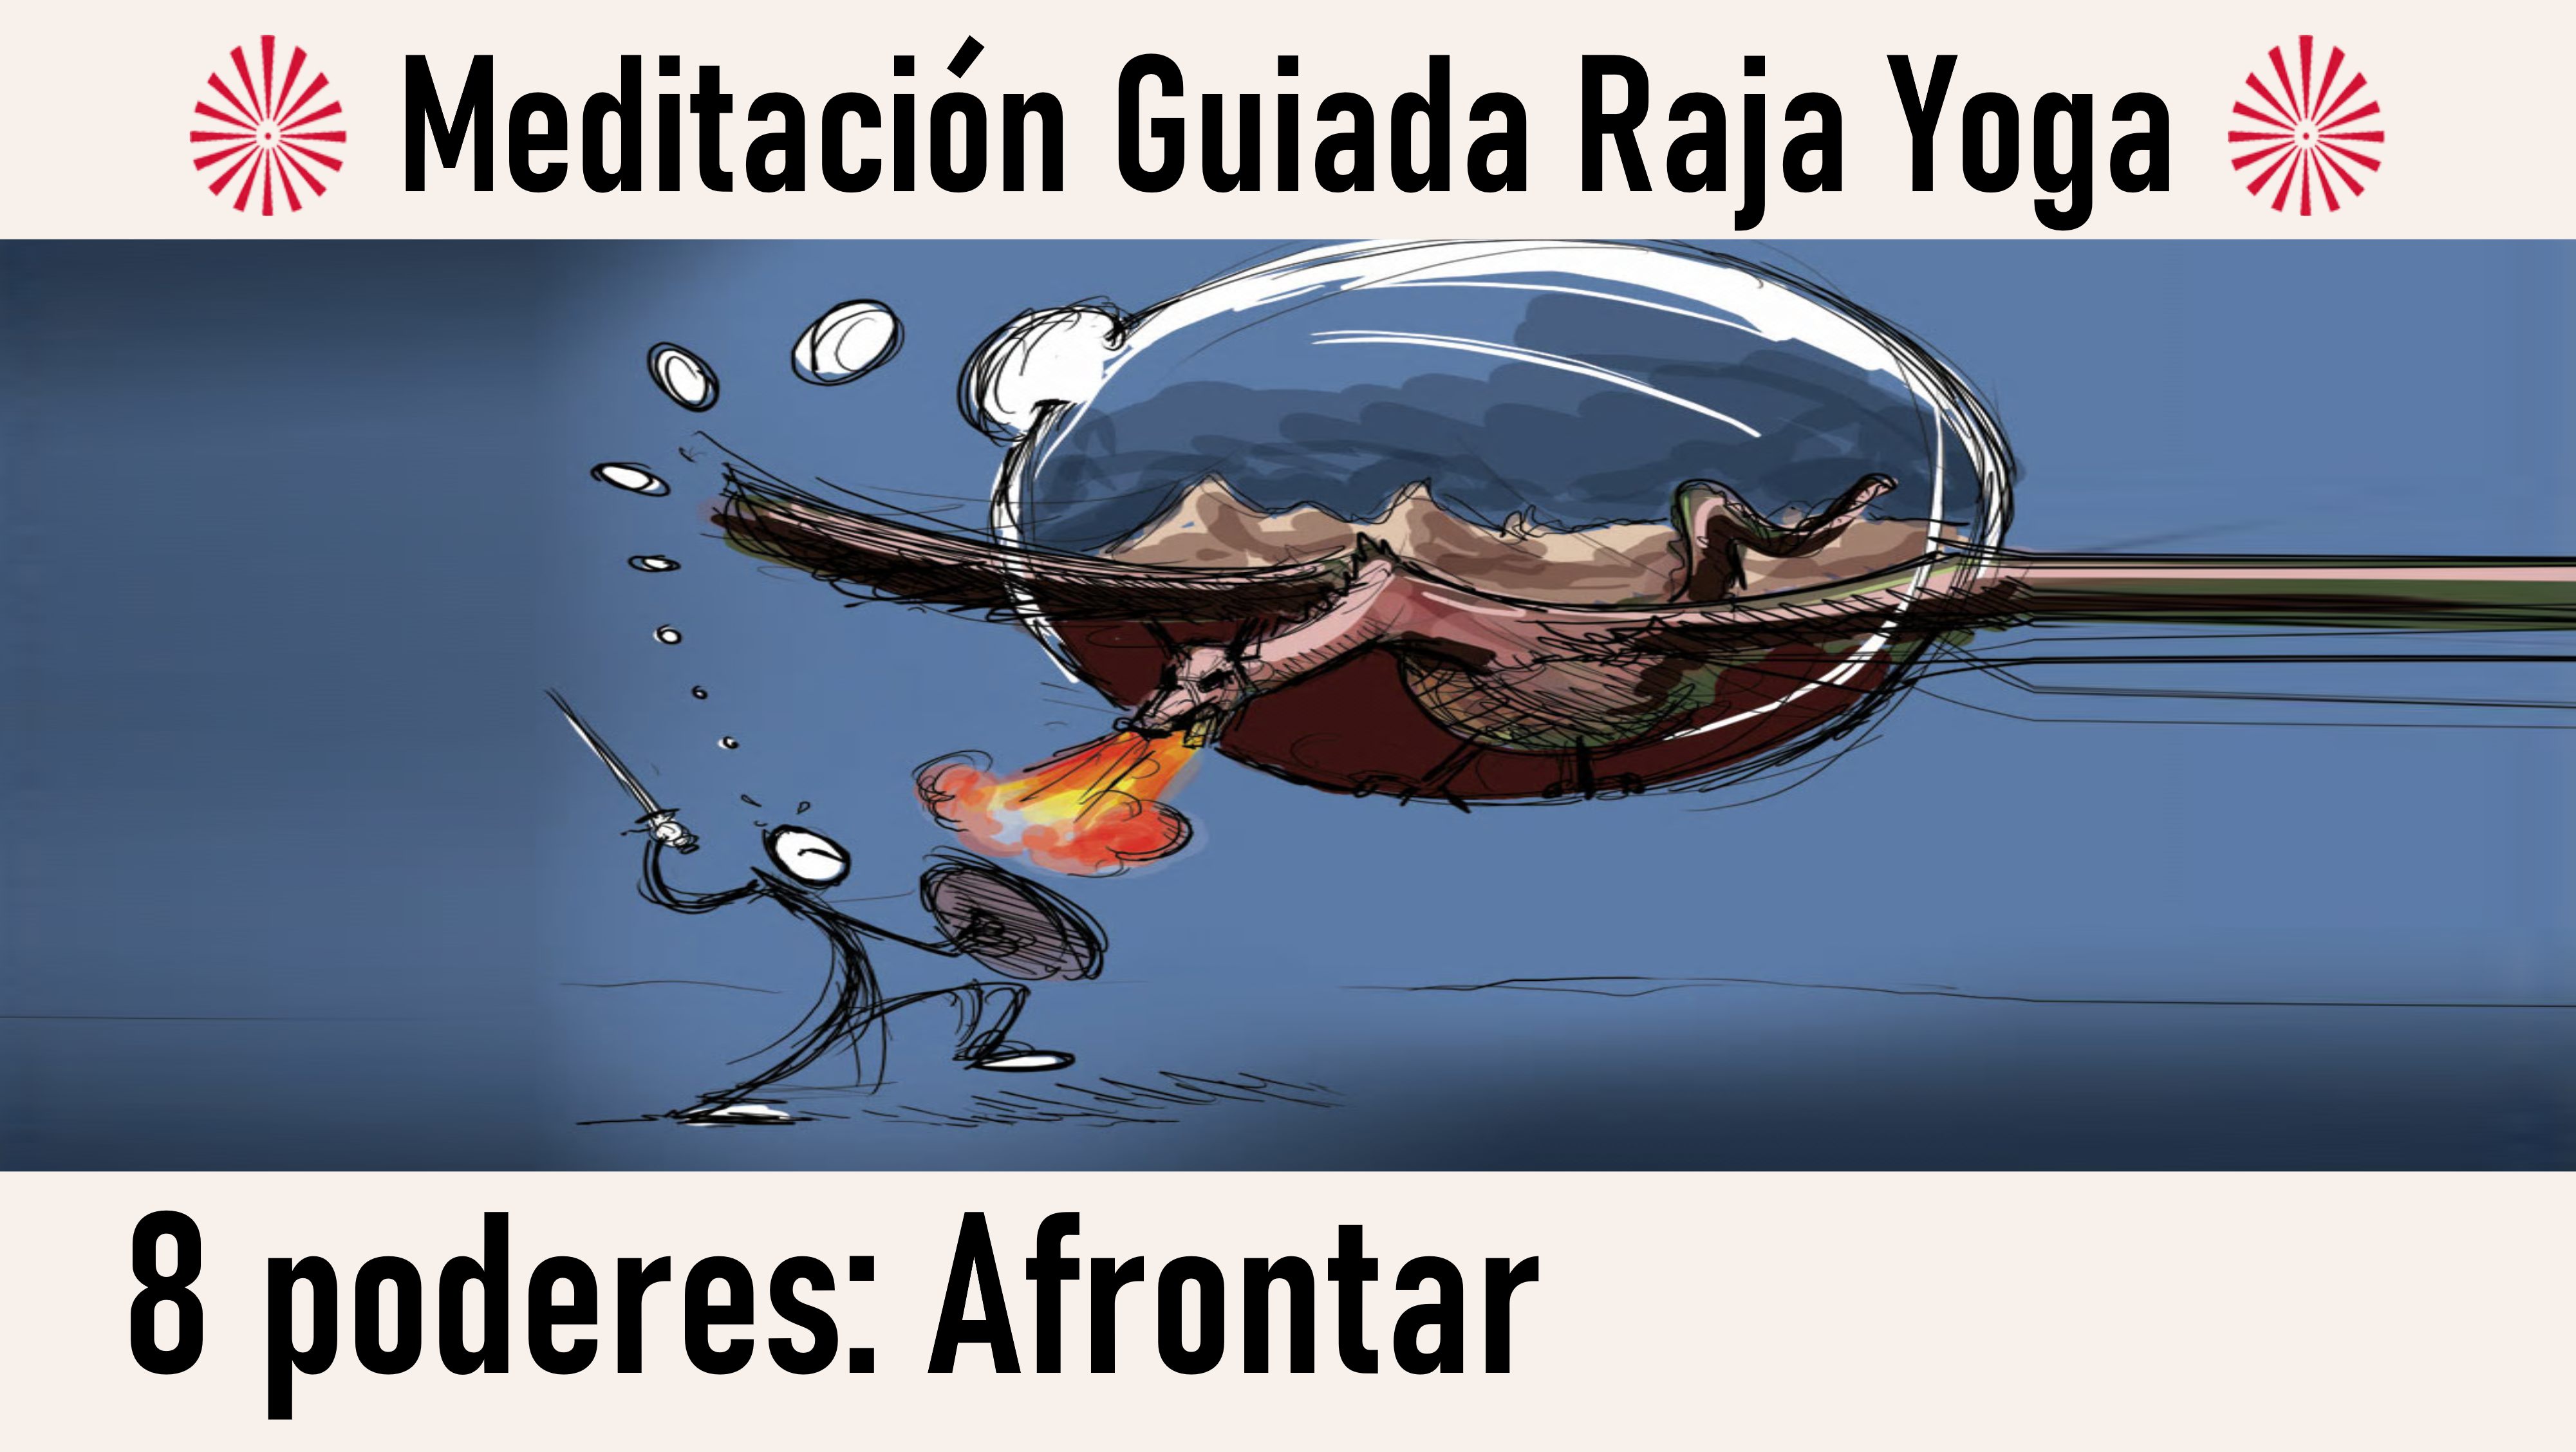 Meditación Raja Yoga. Los ocho poderes: El poder de afrontar (21 Julio 2020) On-line desde Canarias